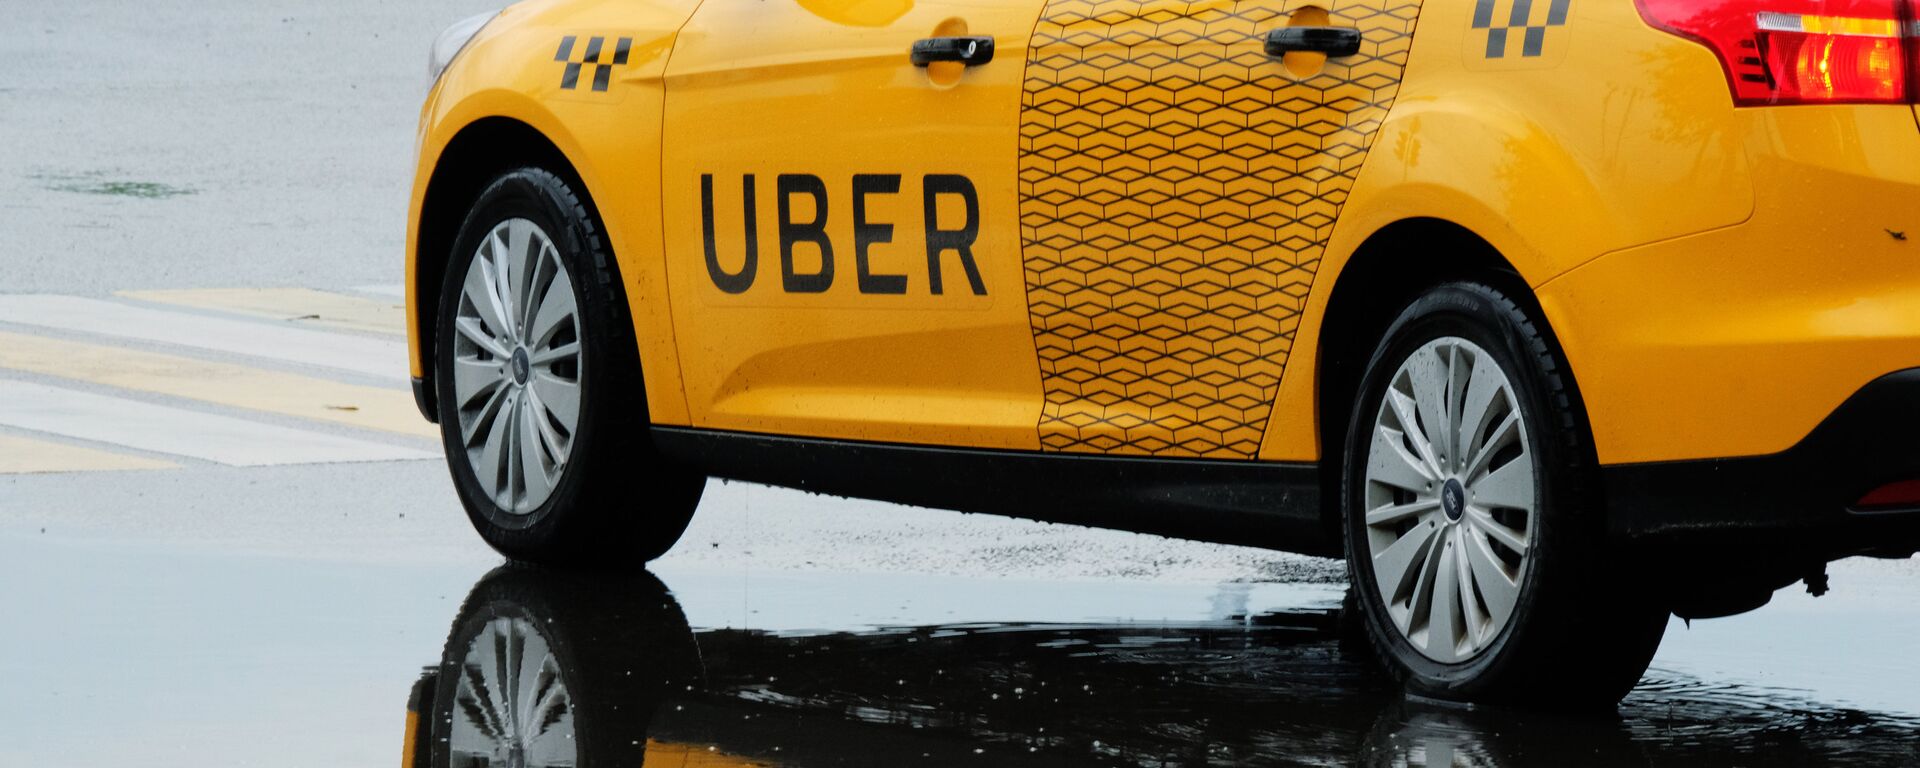 Un taxi de Uber - Sputnik Mundo, 1920, 17.12.2021